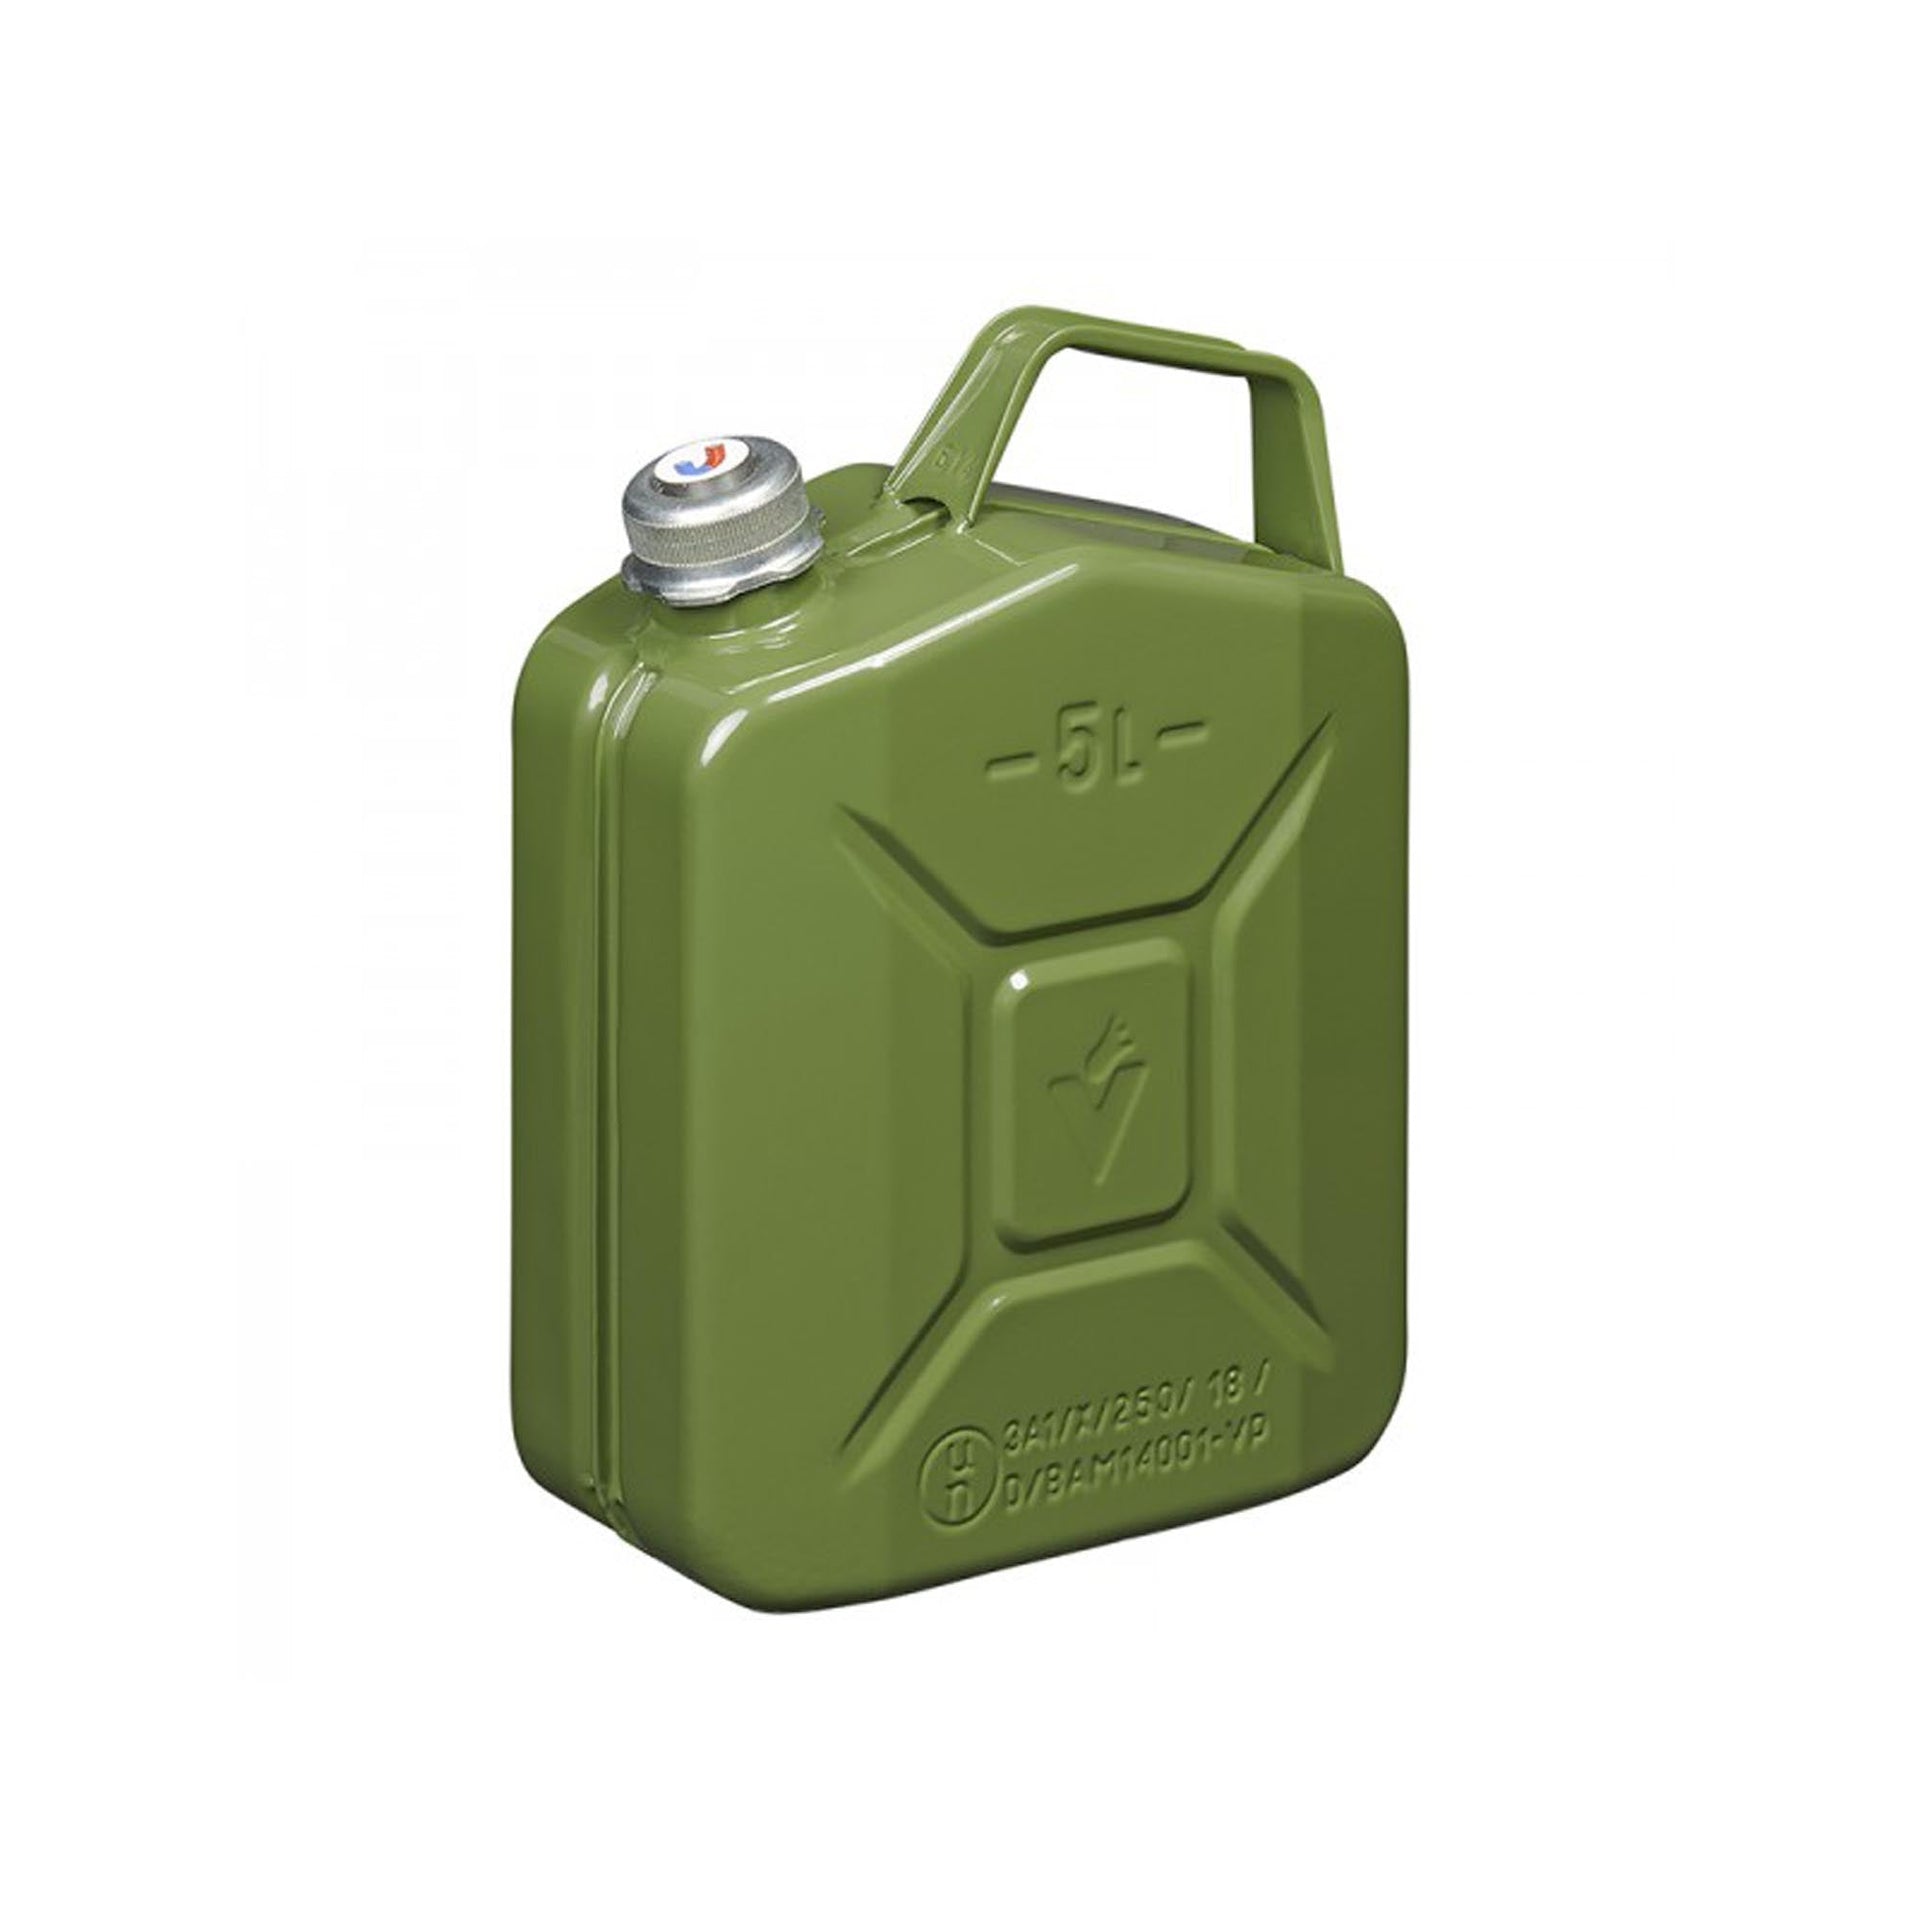 Benzinkanister 20L metall grün mit magnetischem Schraubverschluss